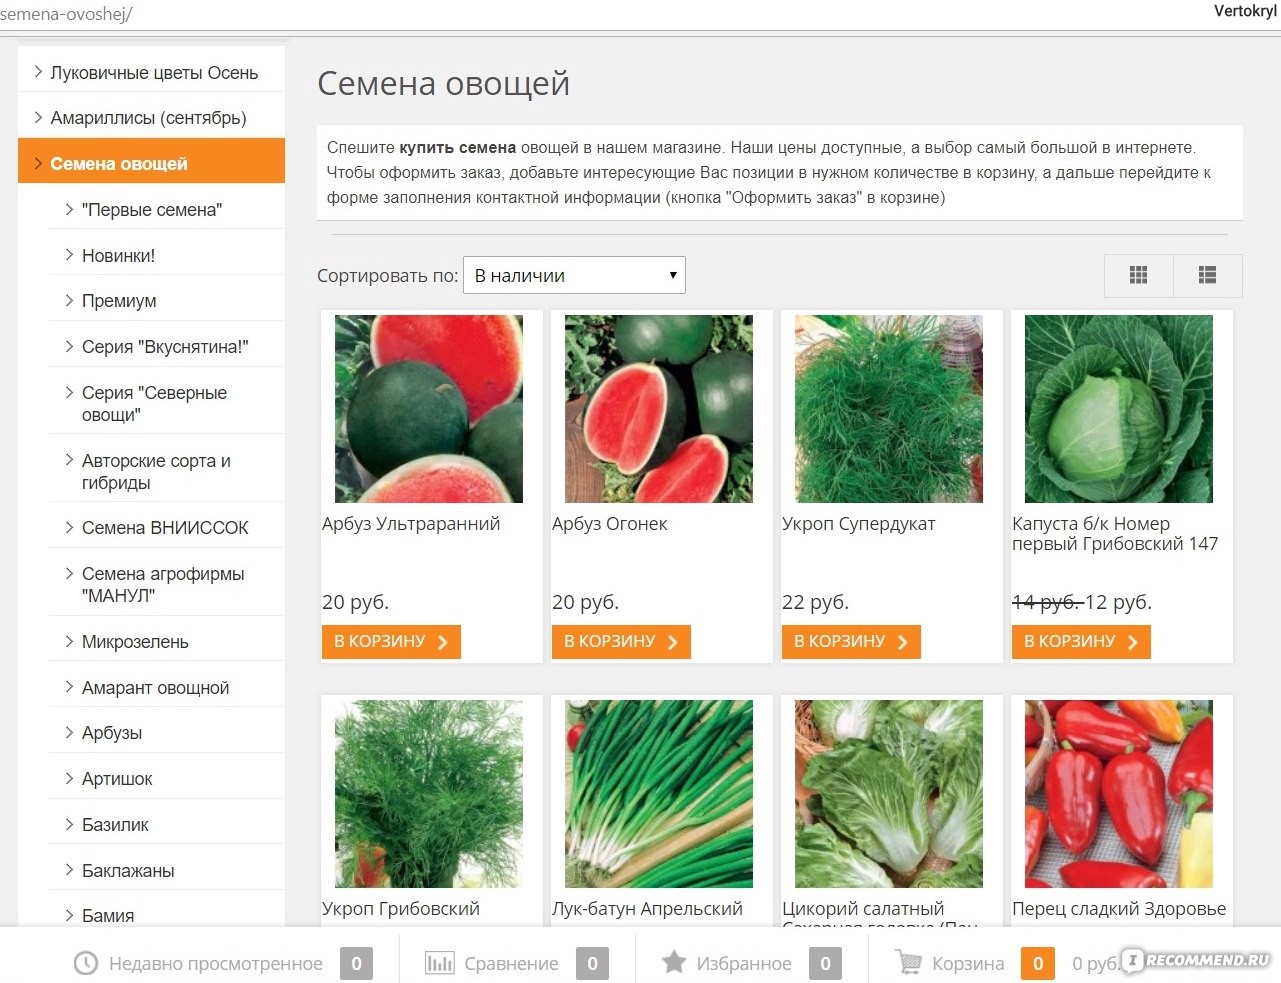 Лучшие сайты агрофирм для покупки семян через интернет